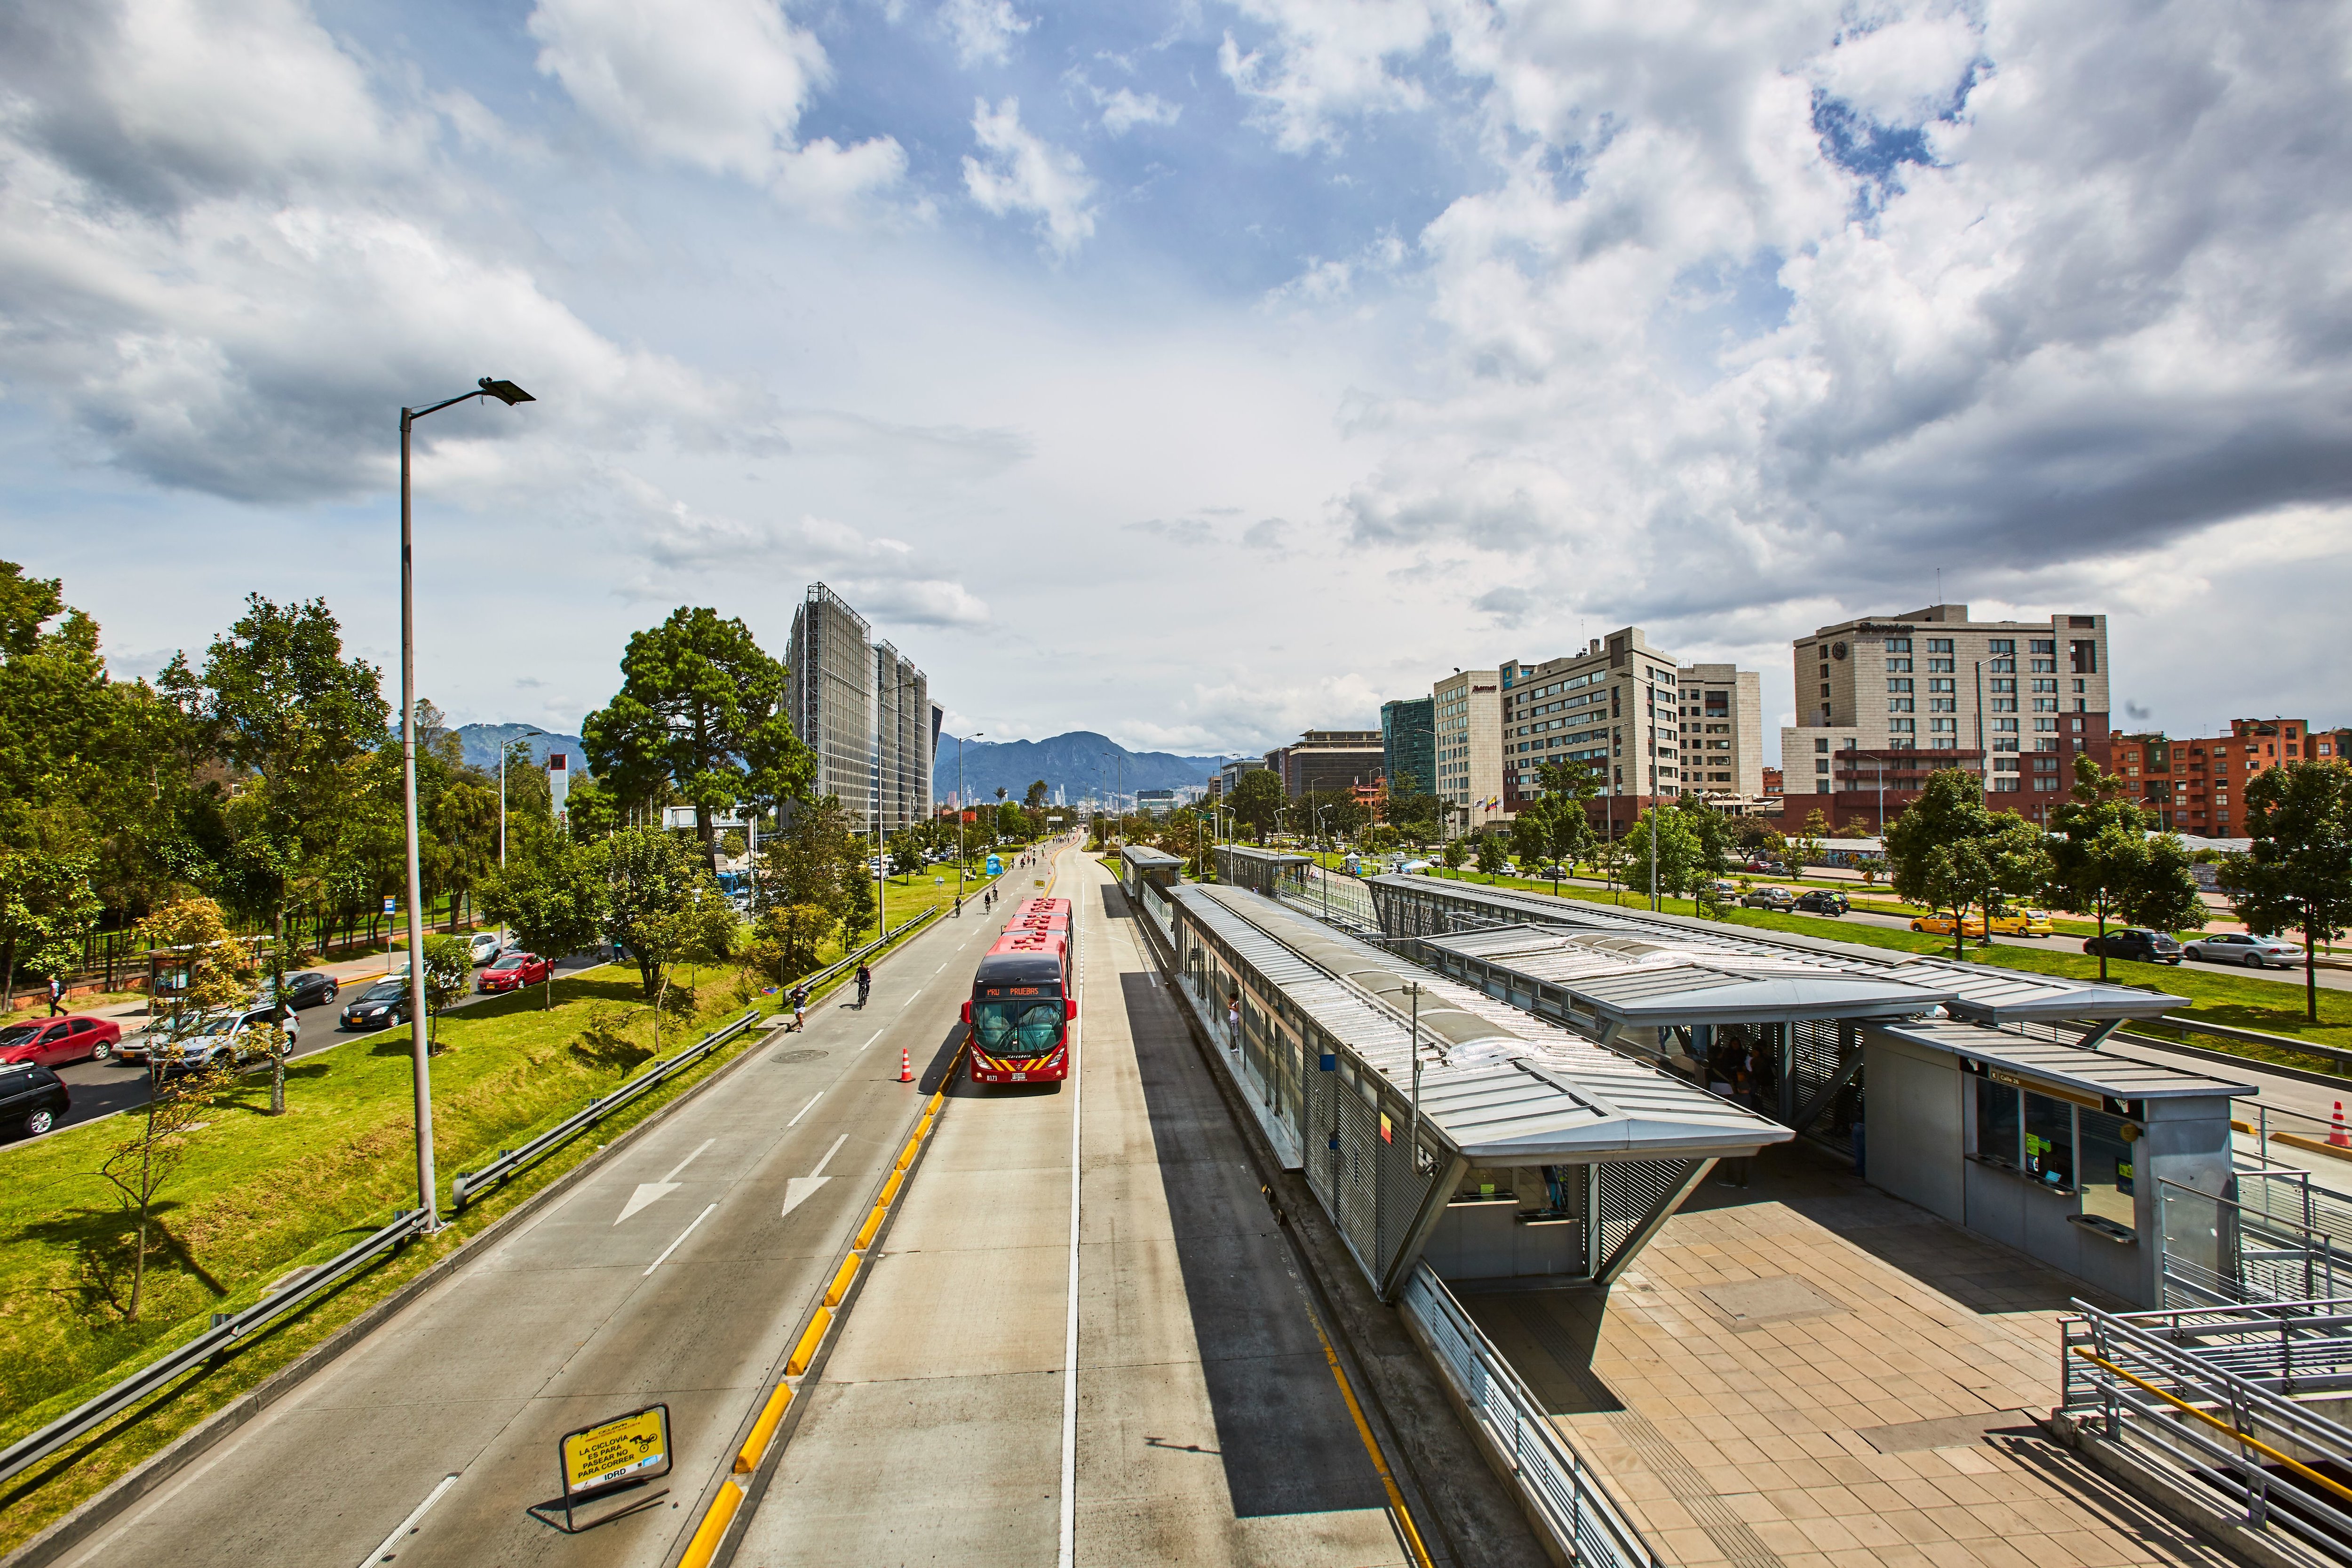 À Bogotà, une partie des bus circule sur voies dédiées, assurant un temps de trajet plus fiable aux voyageurs. DR